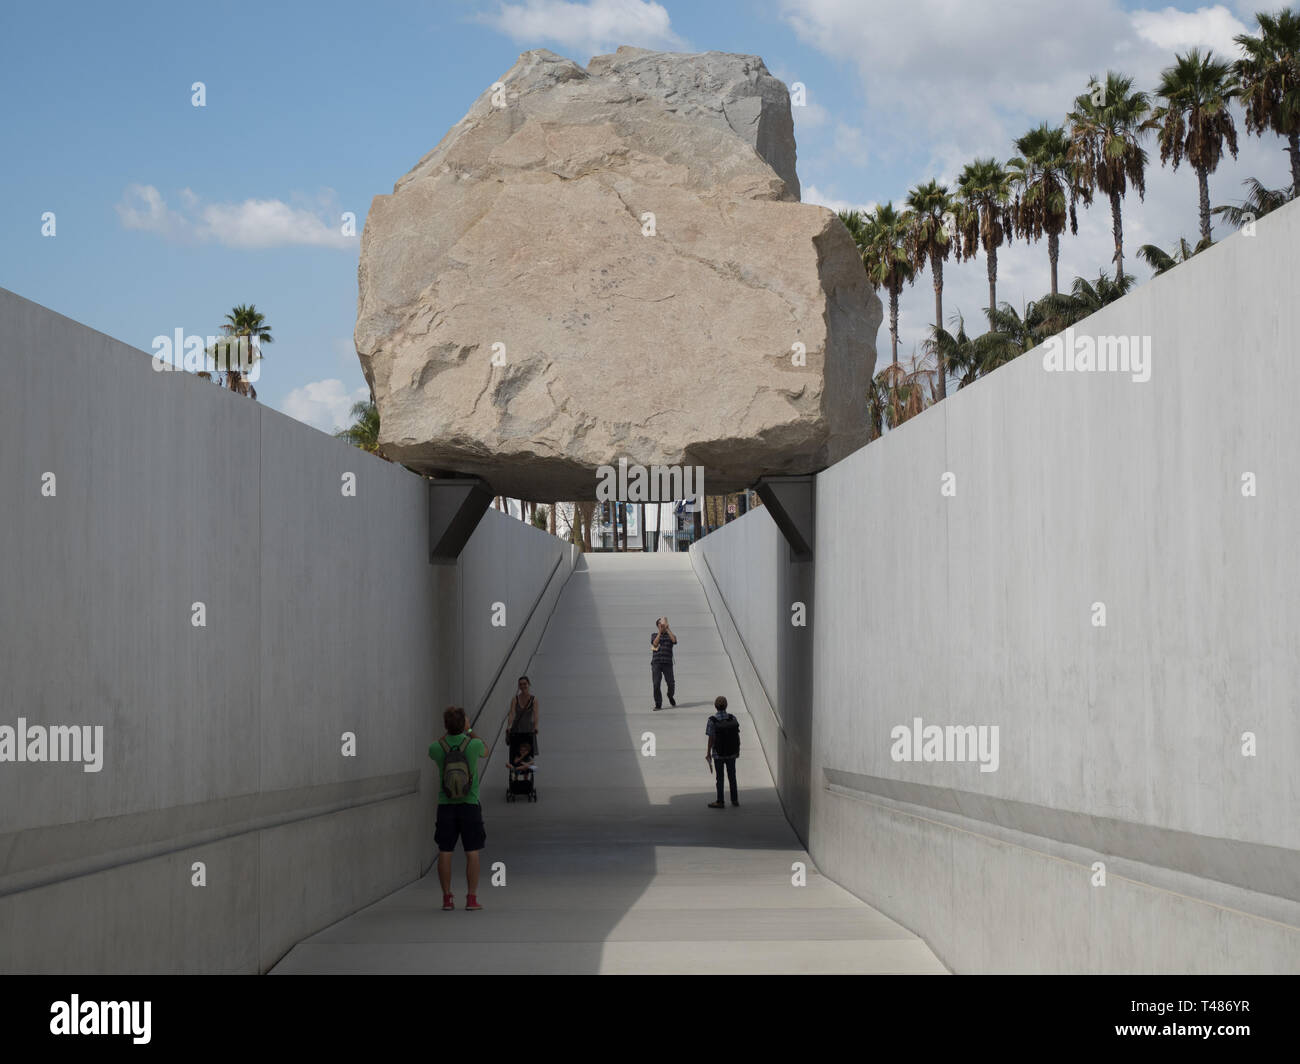 La gente a piedi al di sotto della massa Levitato scultura da Michael Heizer presso il Los Angeles County Museum of Art Foto Stock